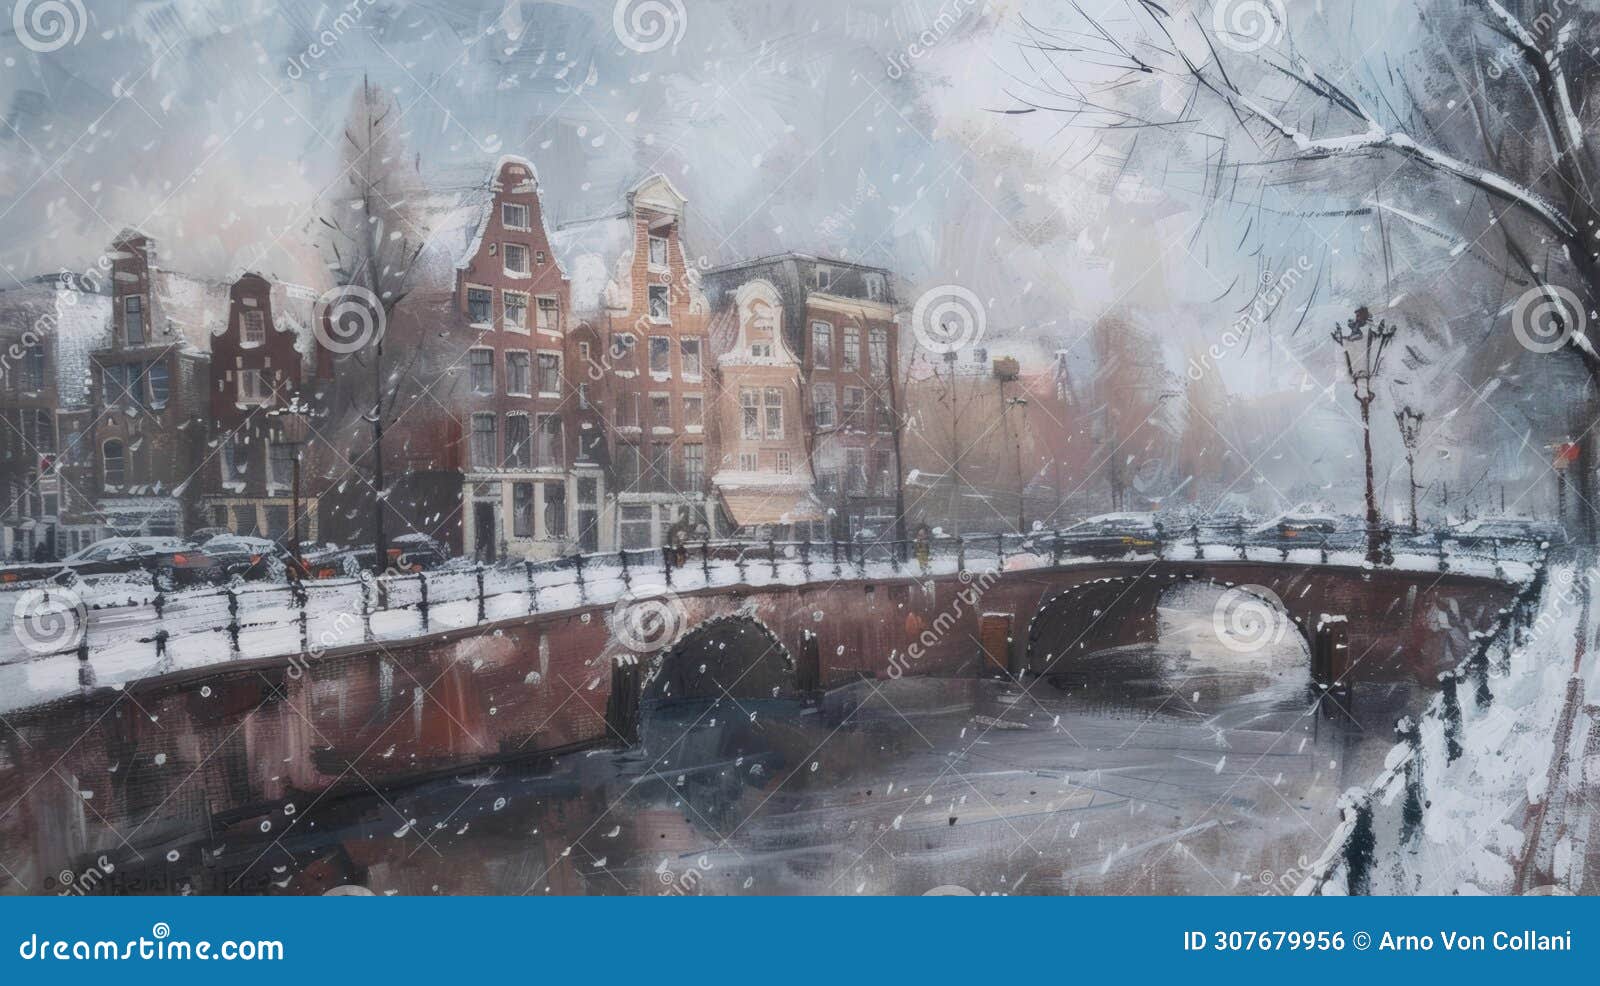 winter wonderland: serene frozen gracht painting in charming amsterdam